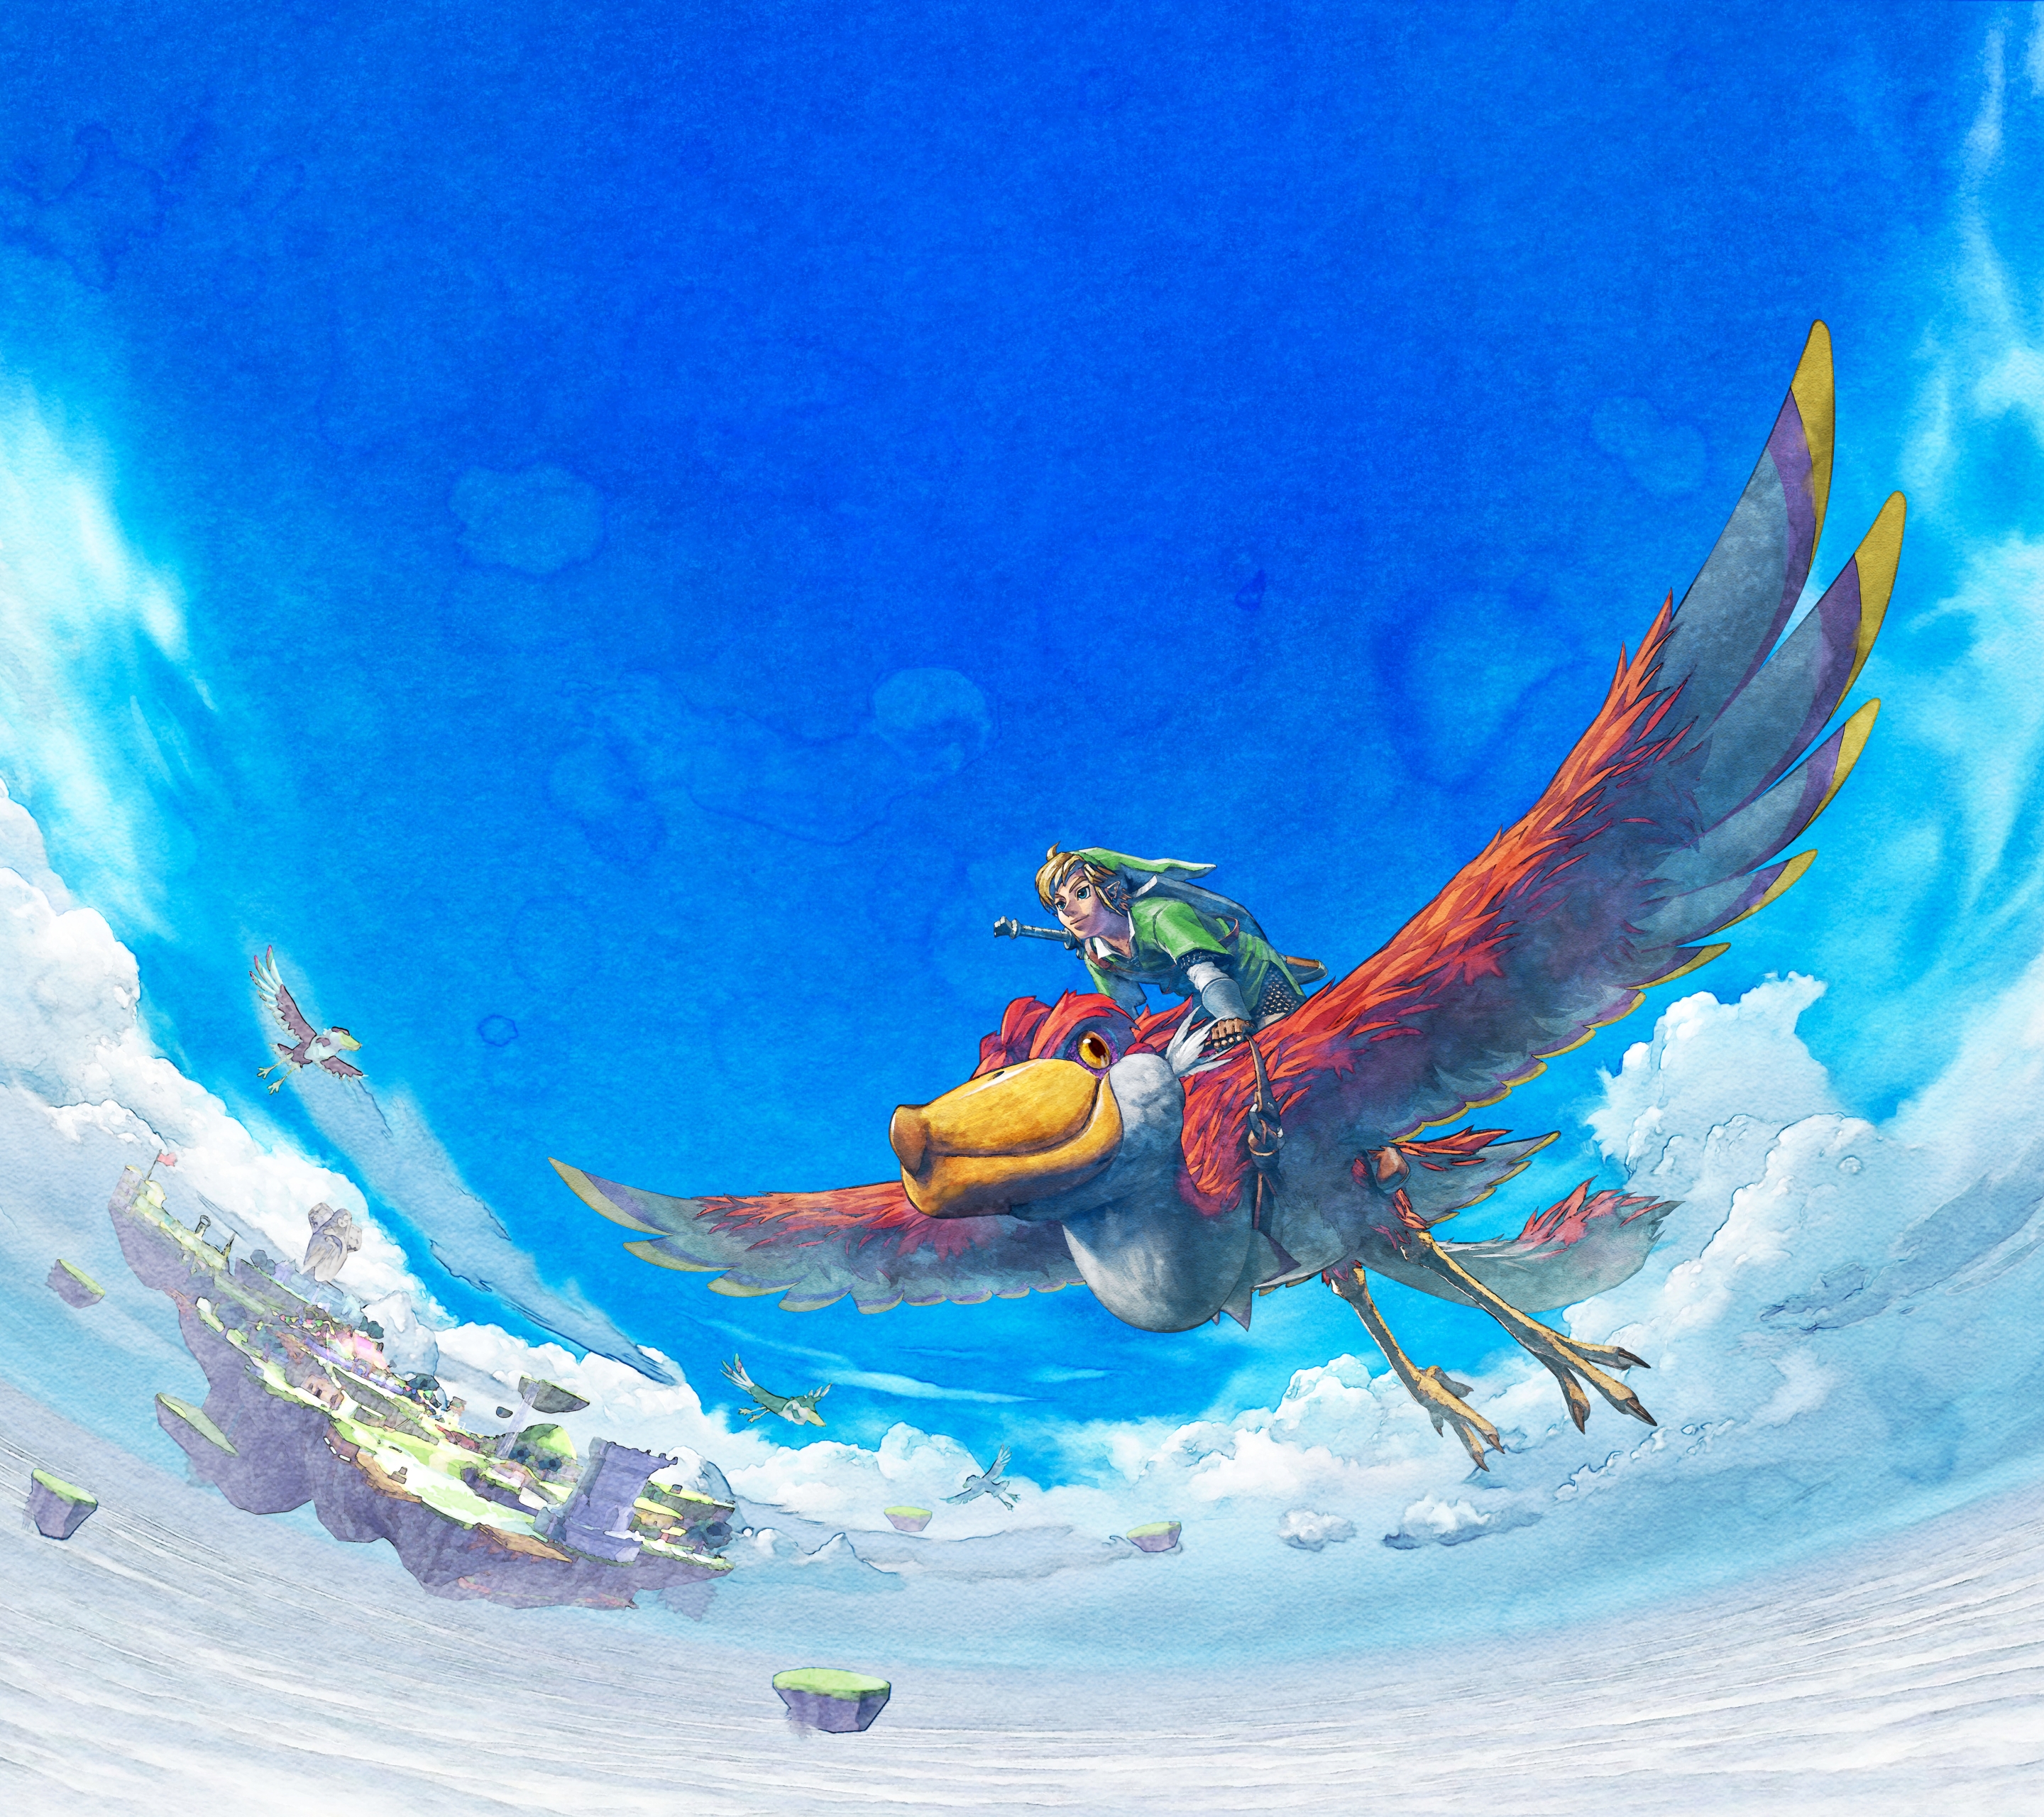 Download mobile wallpaper The Legend Of Zelda: Skyward Sword, Link, Zelda, Video Game for free.